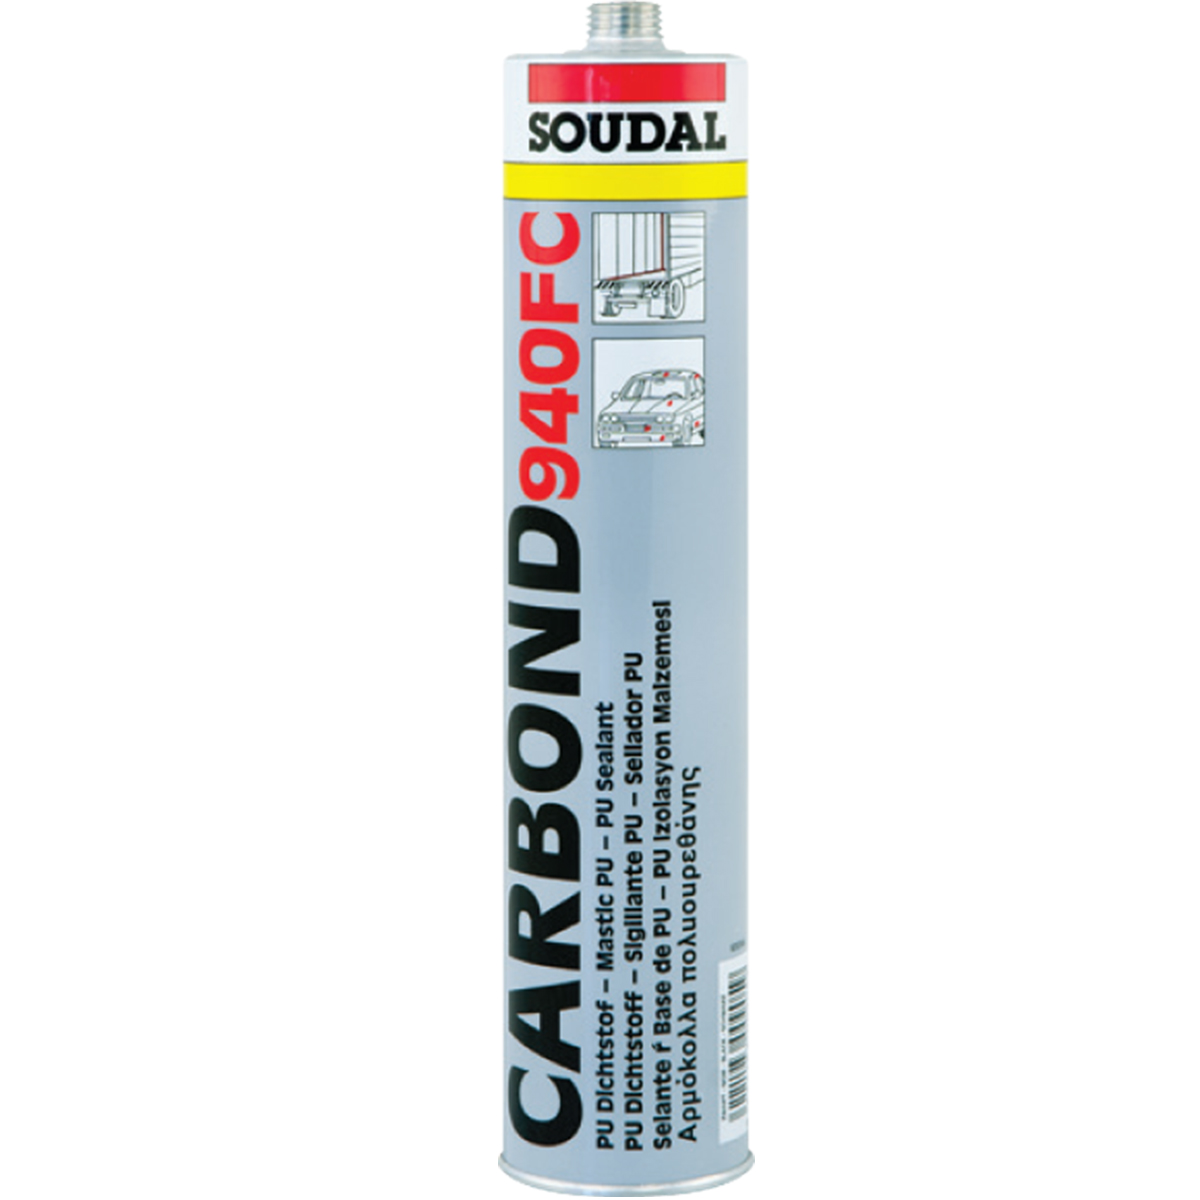 Soudal carbond 940 FC - 